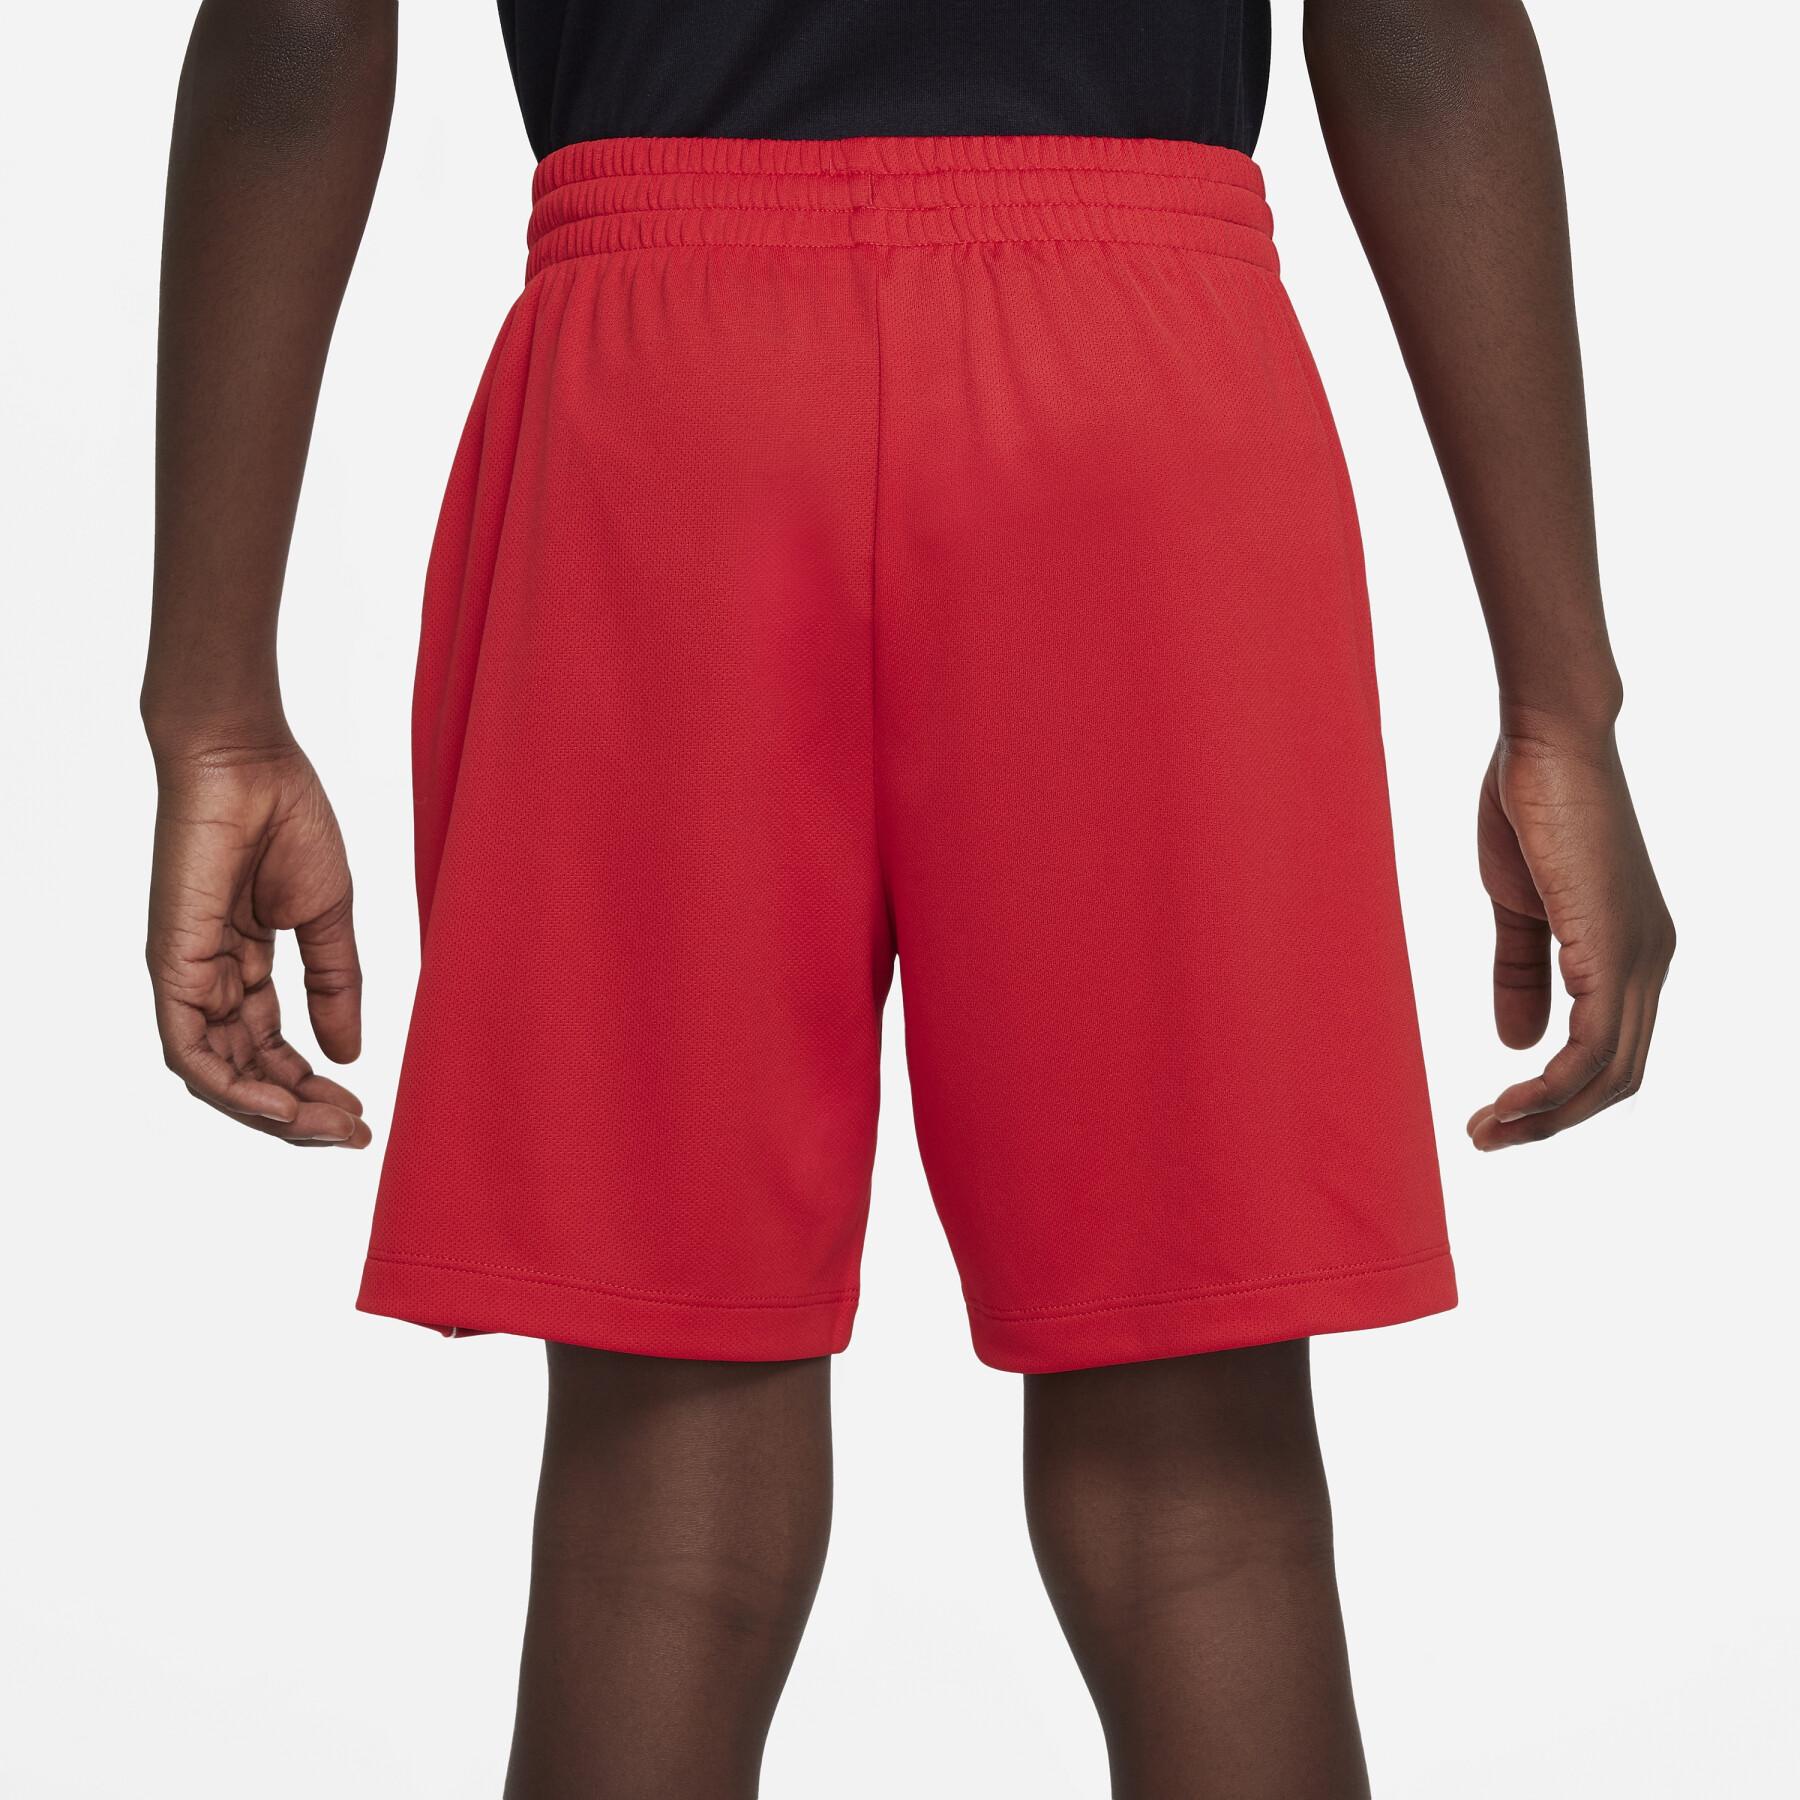 Kids shorts Nike Dri-Fit Multi+